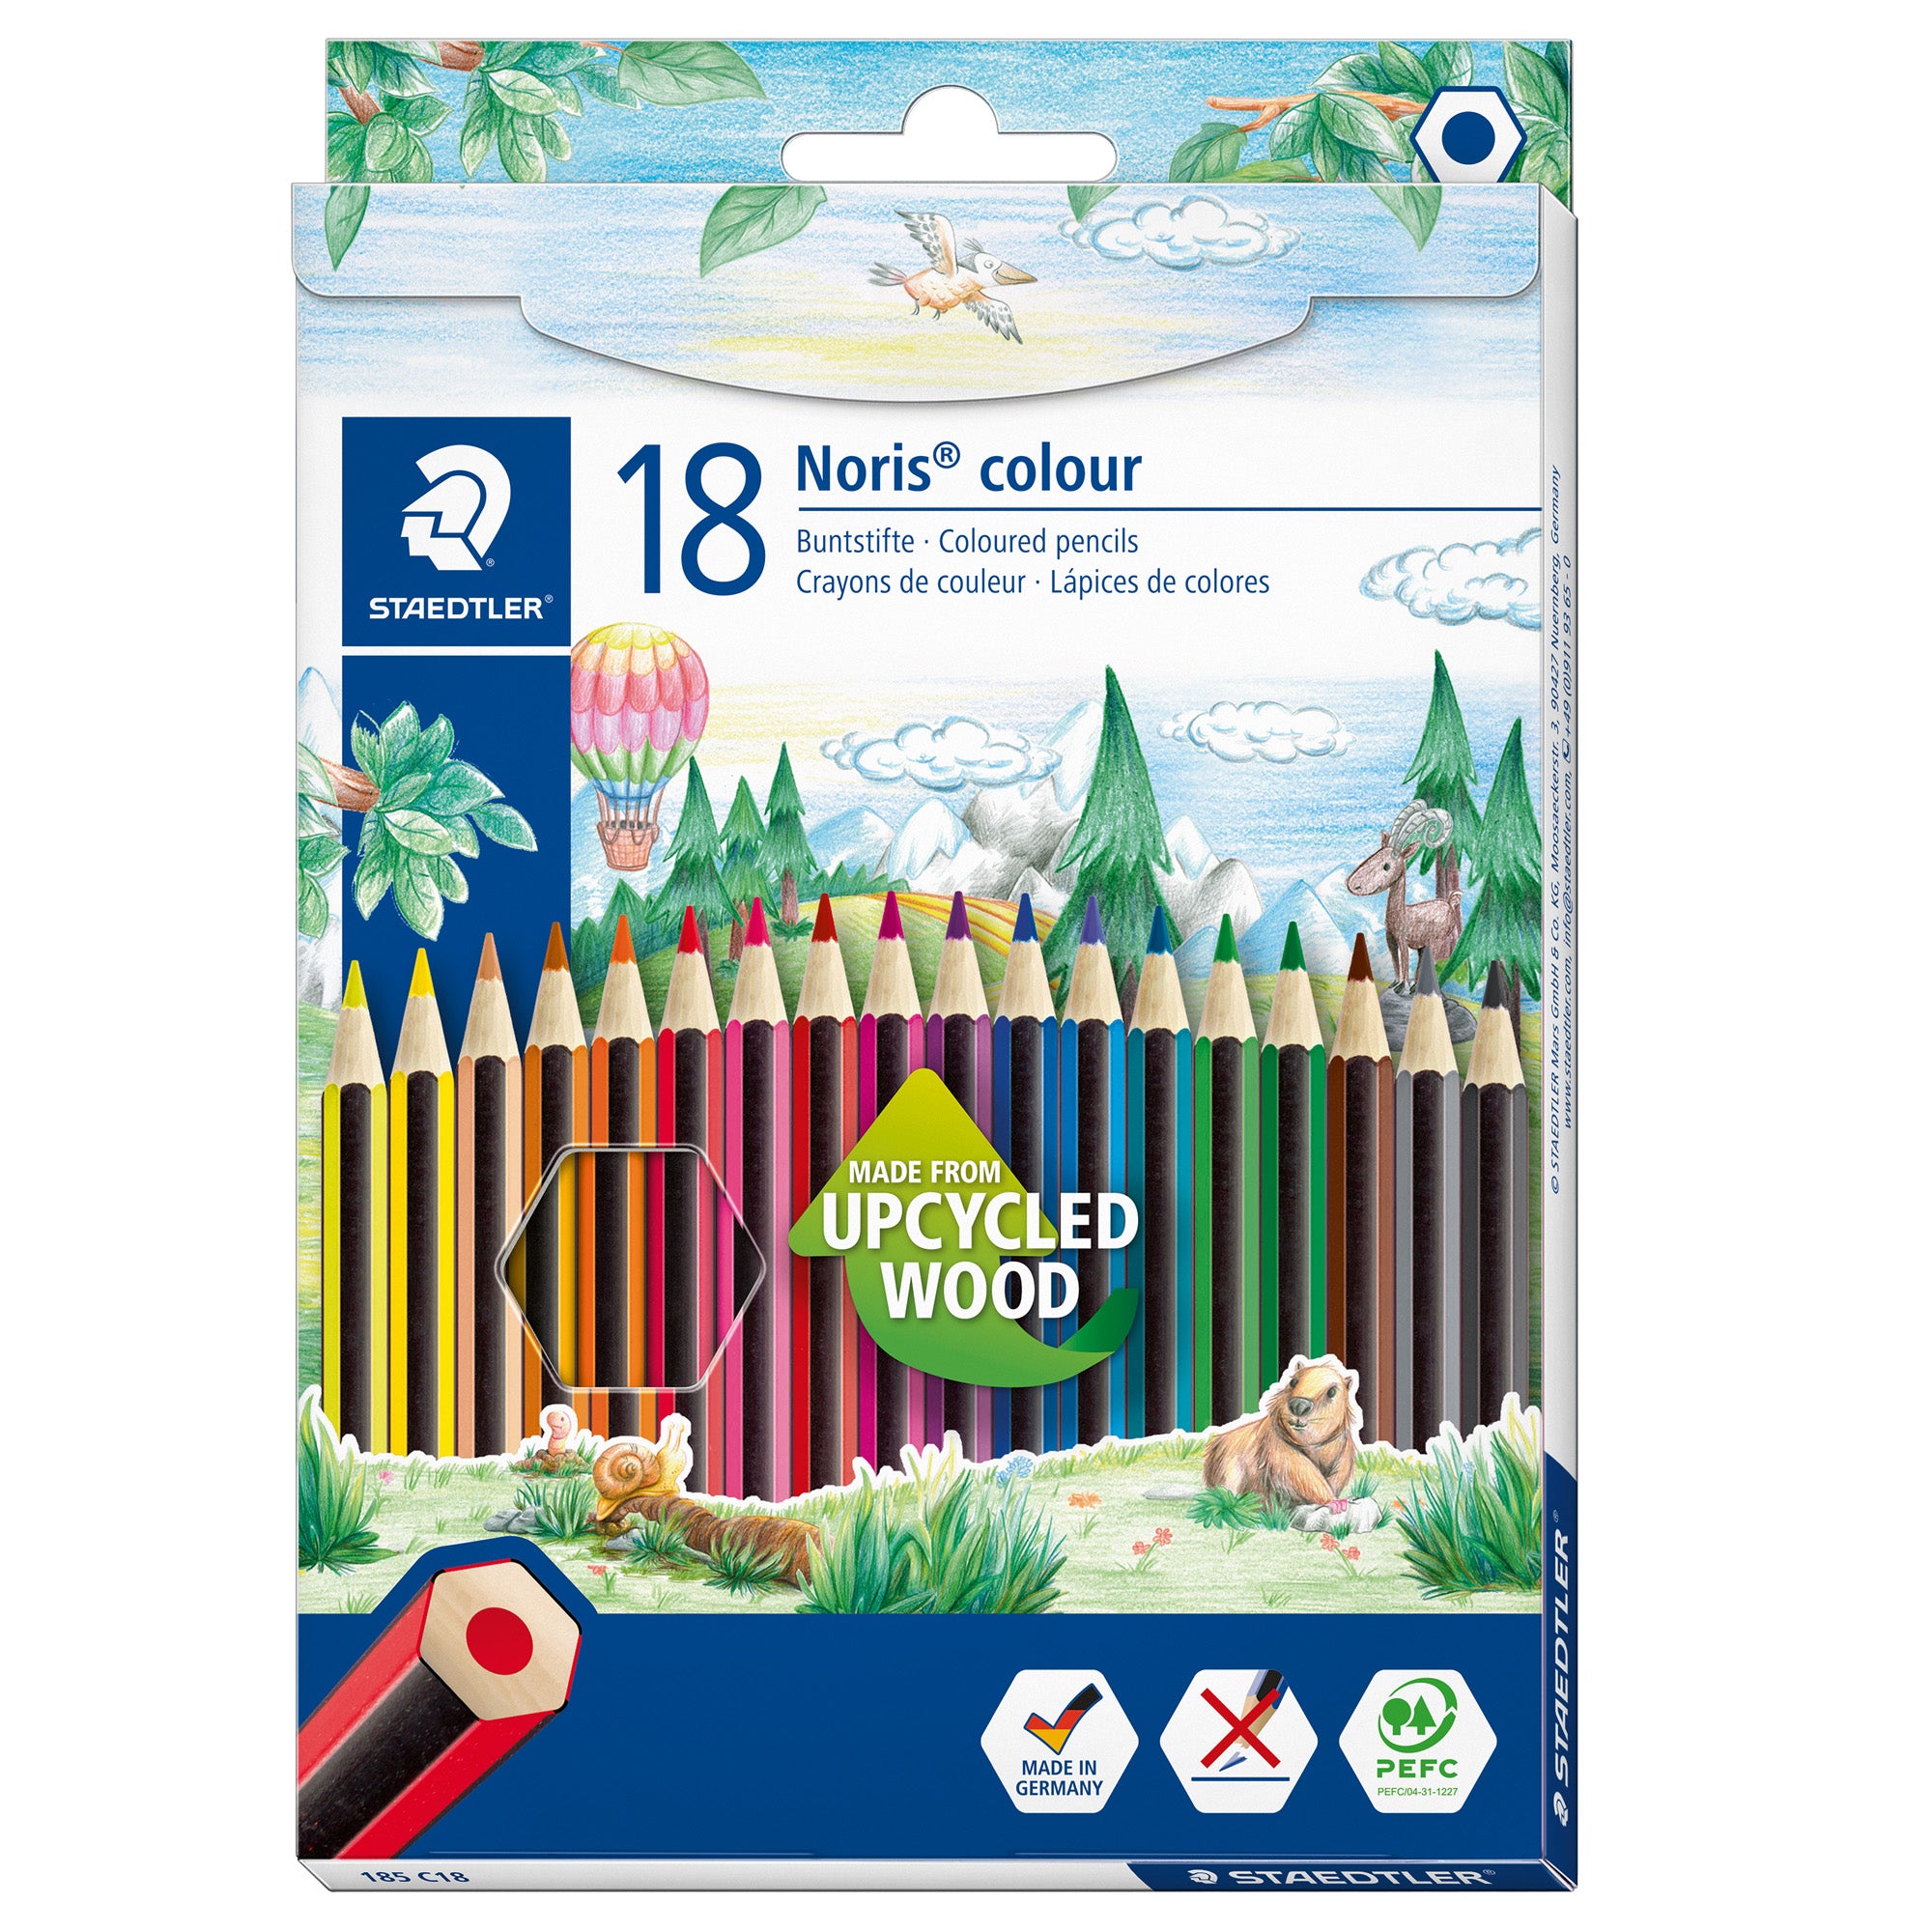 staedtler-astuccio-18-matite-noris-colour-wopex-colori-assortiti